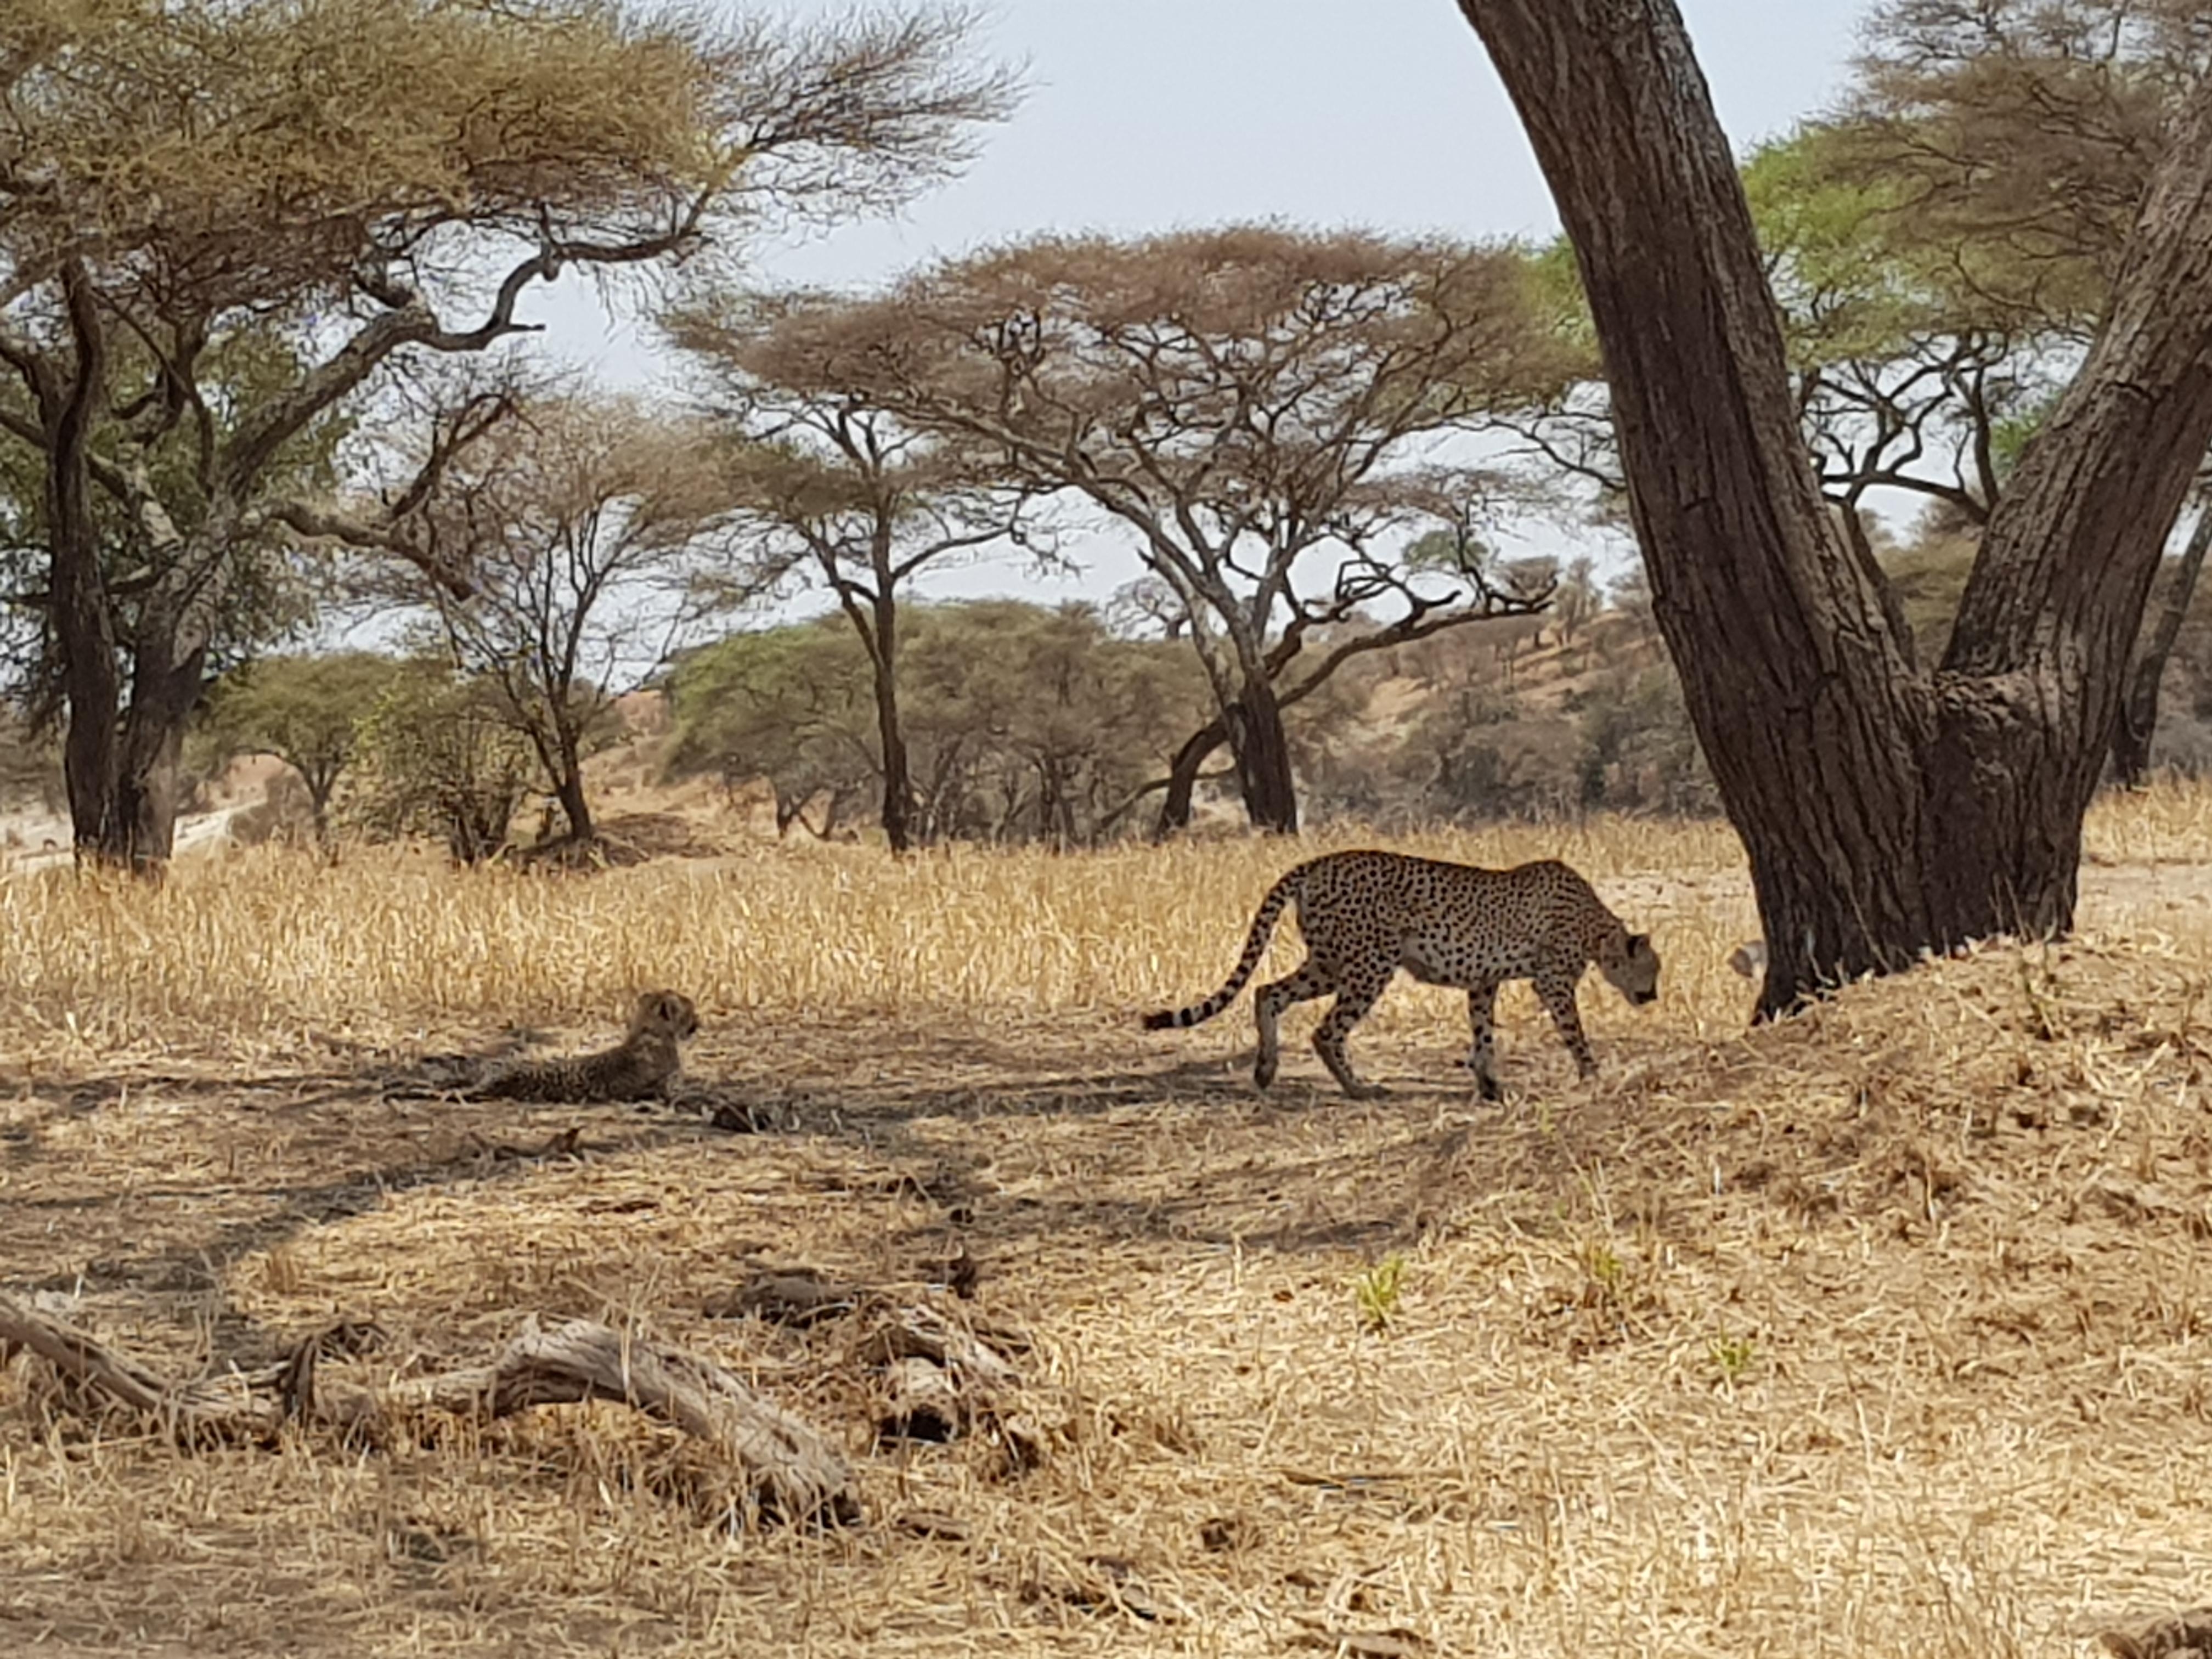 Mein schönster Urlaub war definitiv Safari in Tansania im September letzten Jahres #travelchallenge #meinschönsterurlaub